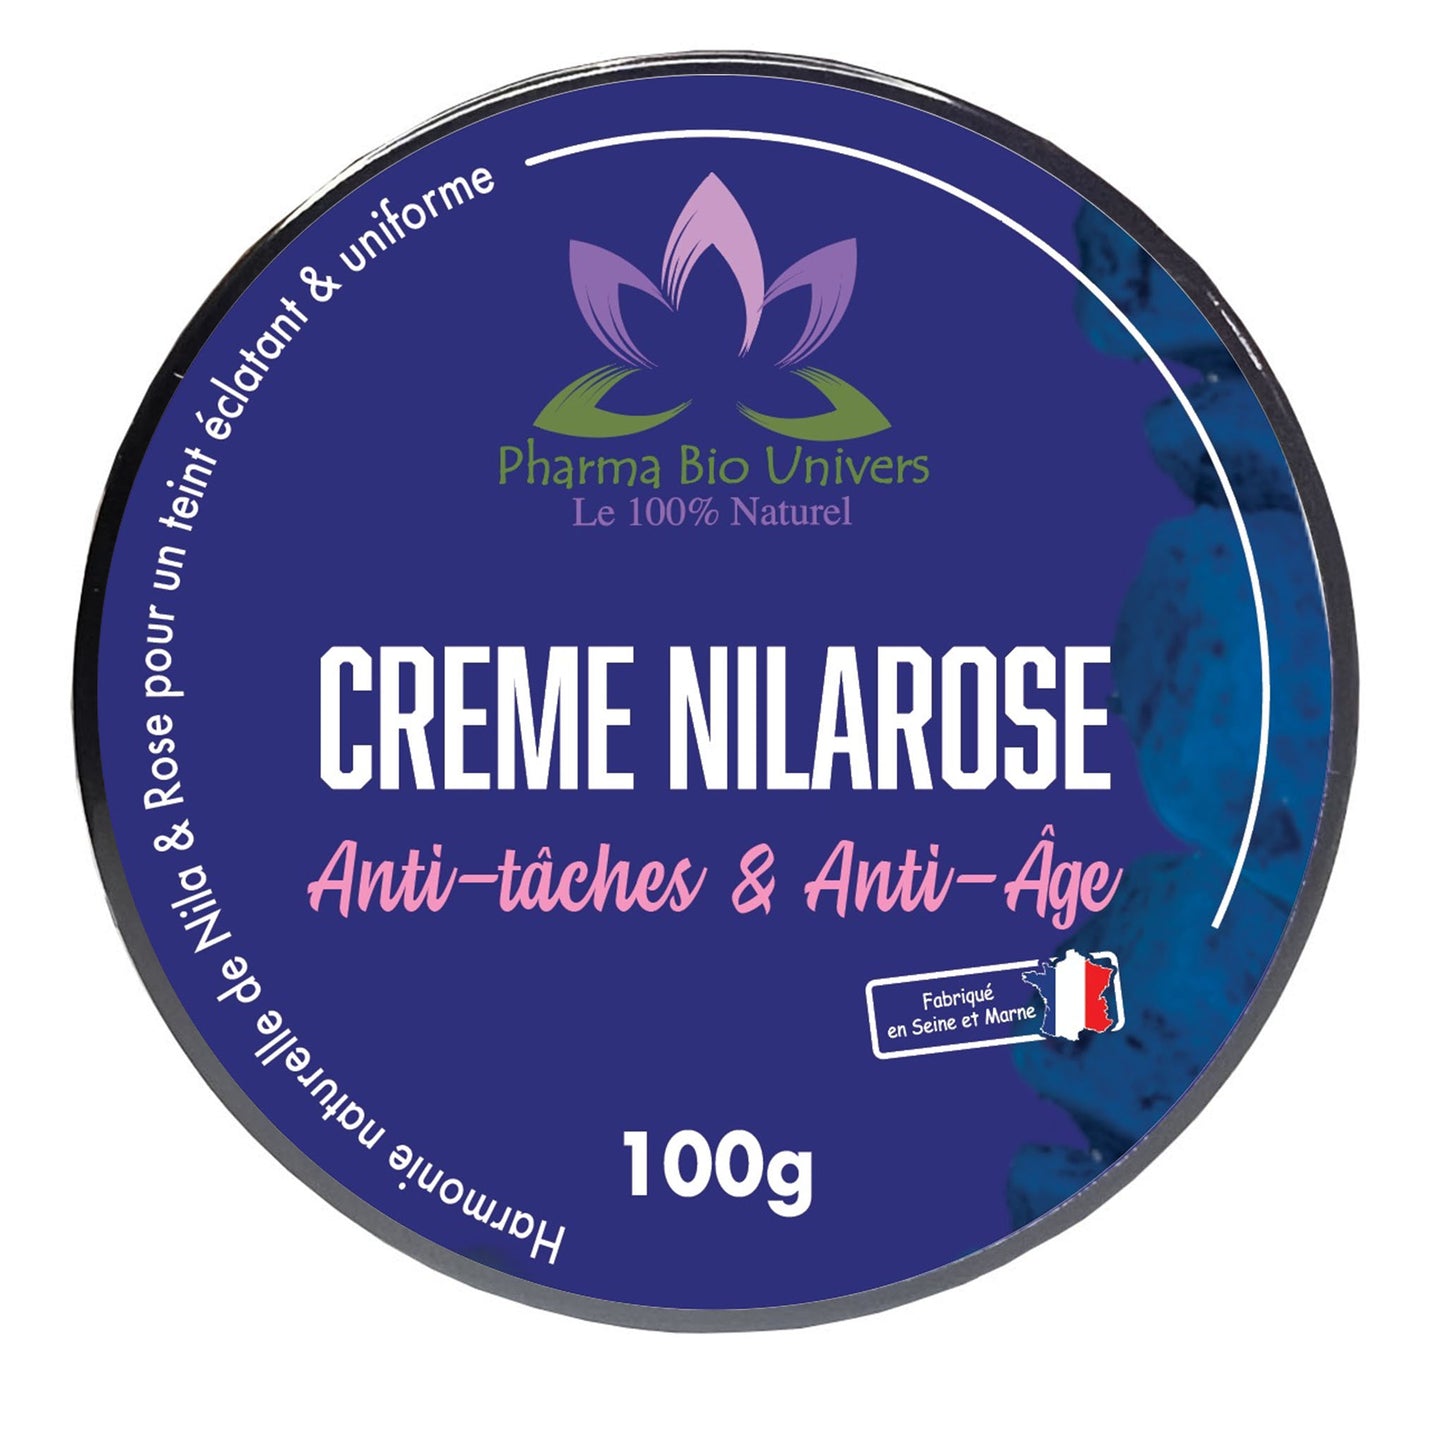 Image de notre Crème NILAROSE, une formule Anti-Taches et Anti-Âge enrichie en Eau de Rose et poudre de Nila. Pot de 100 g pour une peau éclatante et rajeunie.